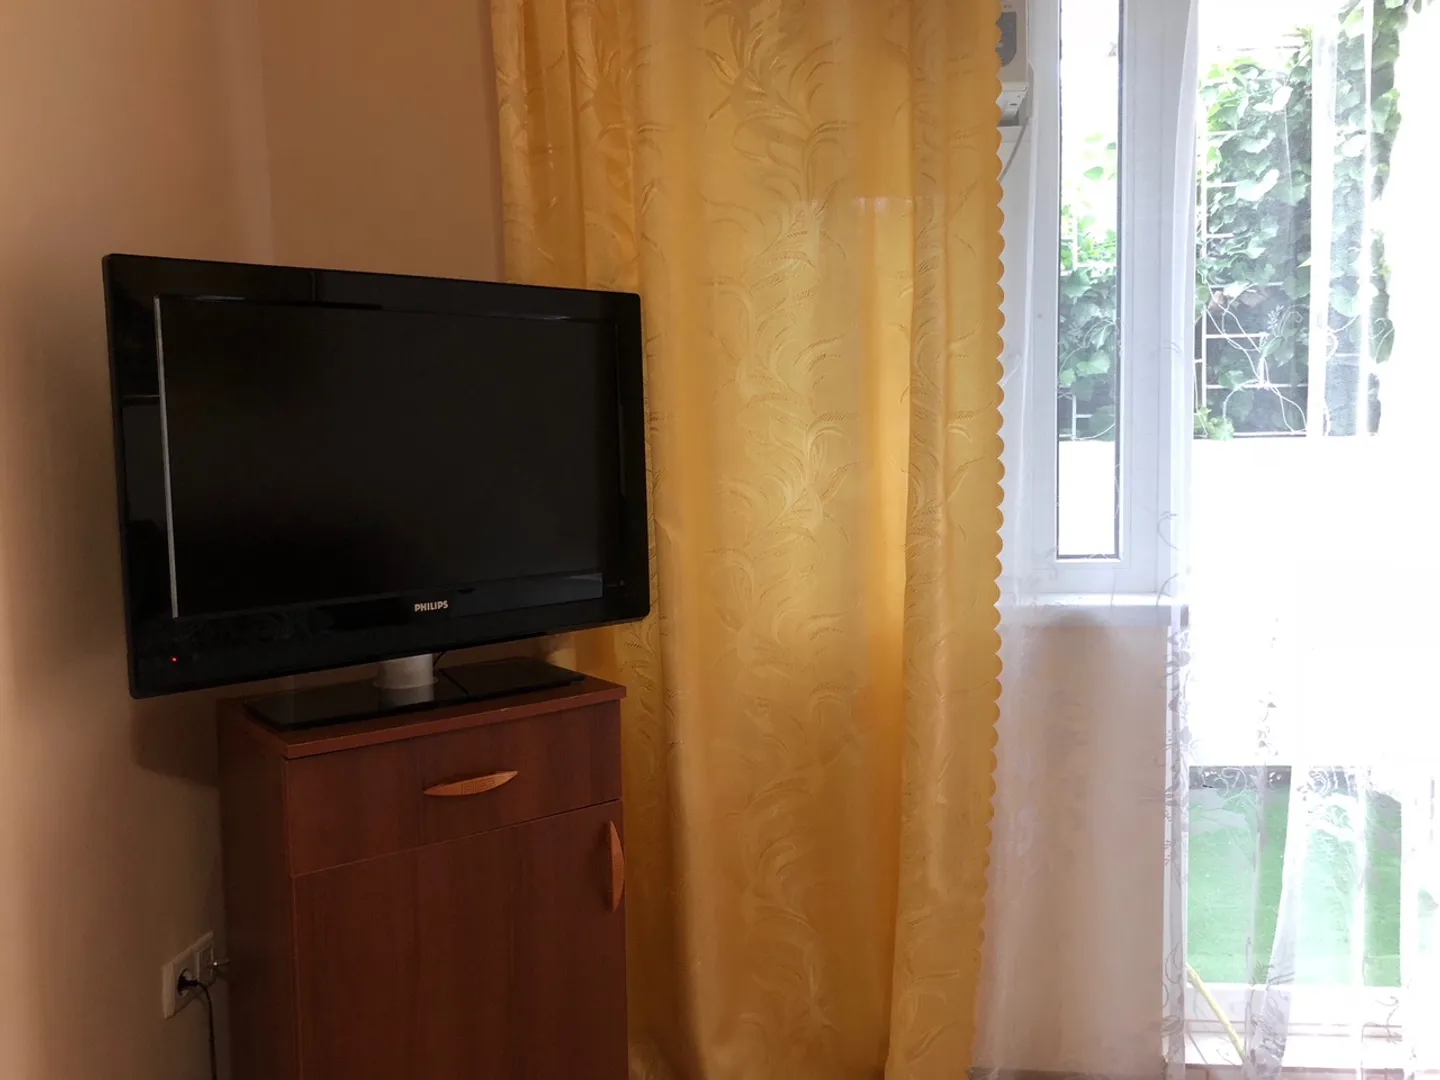 ТВ с плоским экраном и с Т-2 (22 сетевых программы)